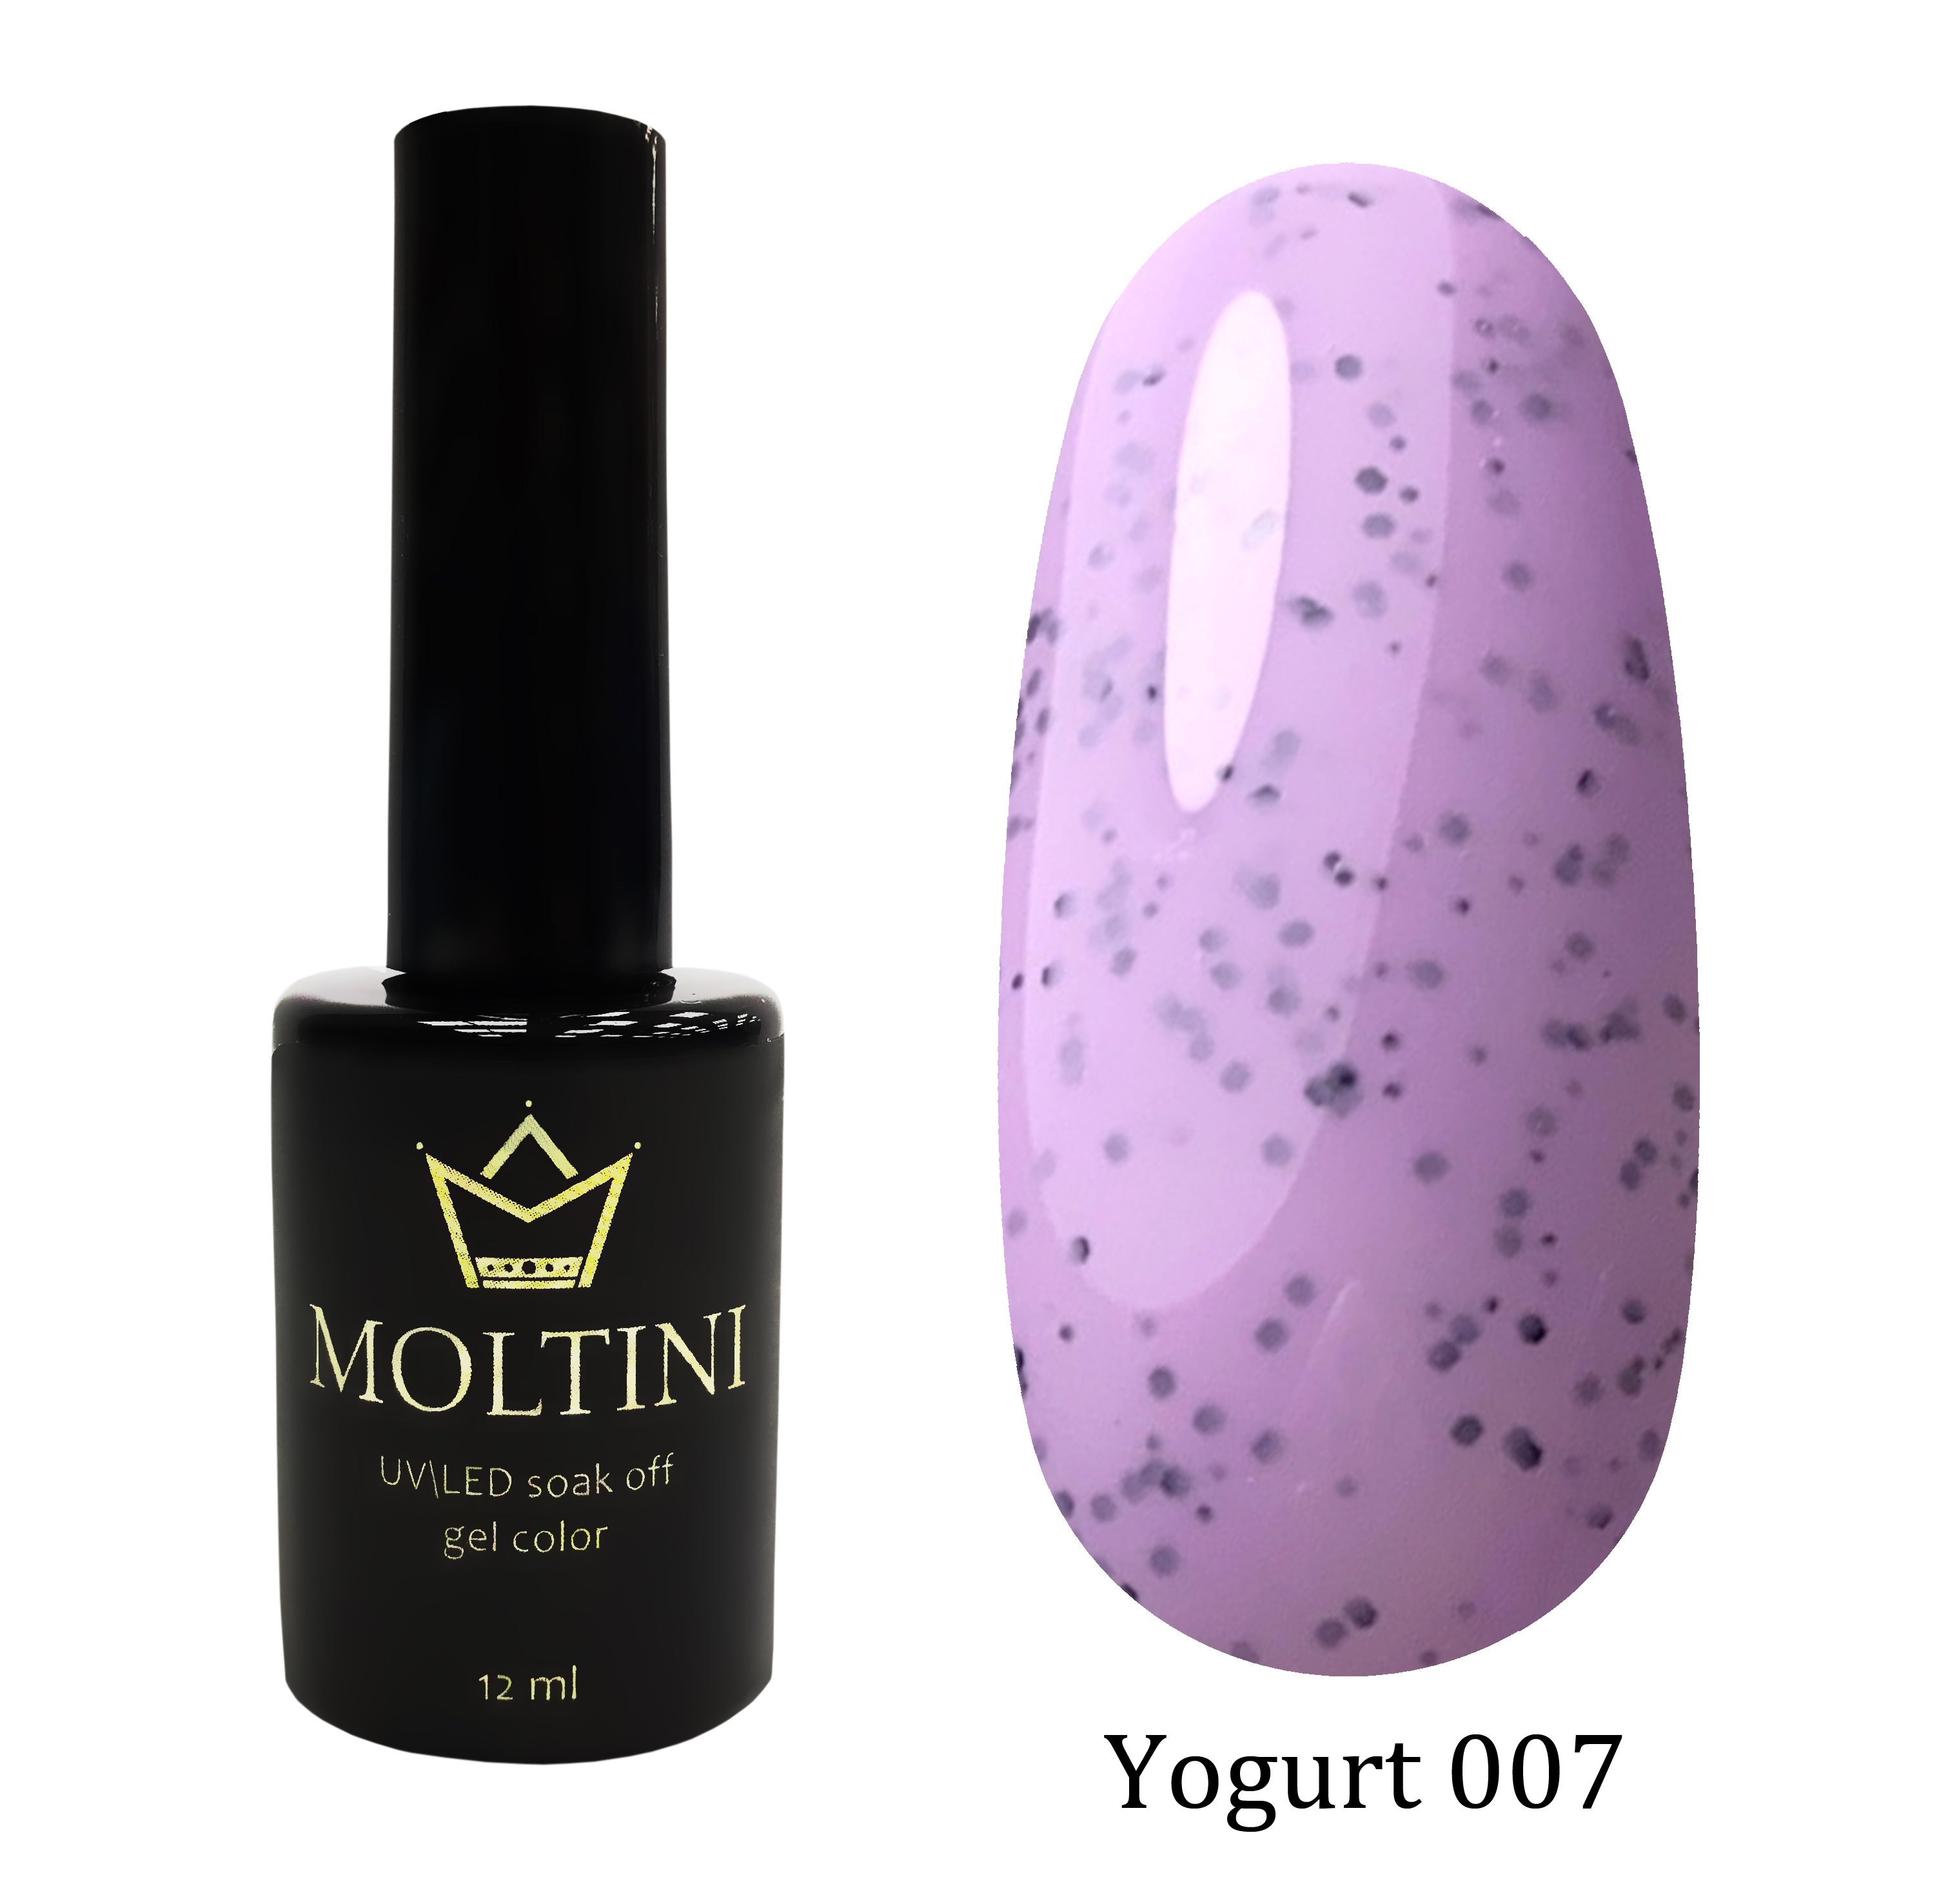 Moltini цветной гель-лак Yogurt 007, 12 мл